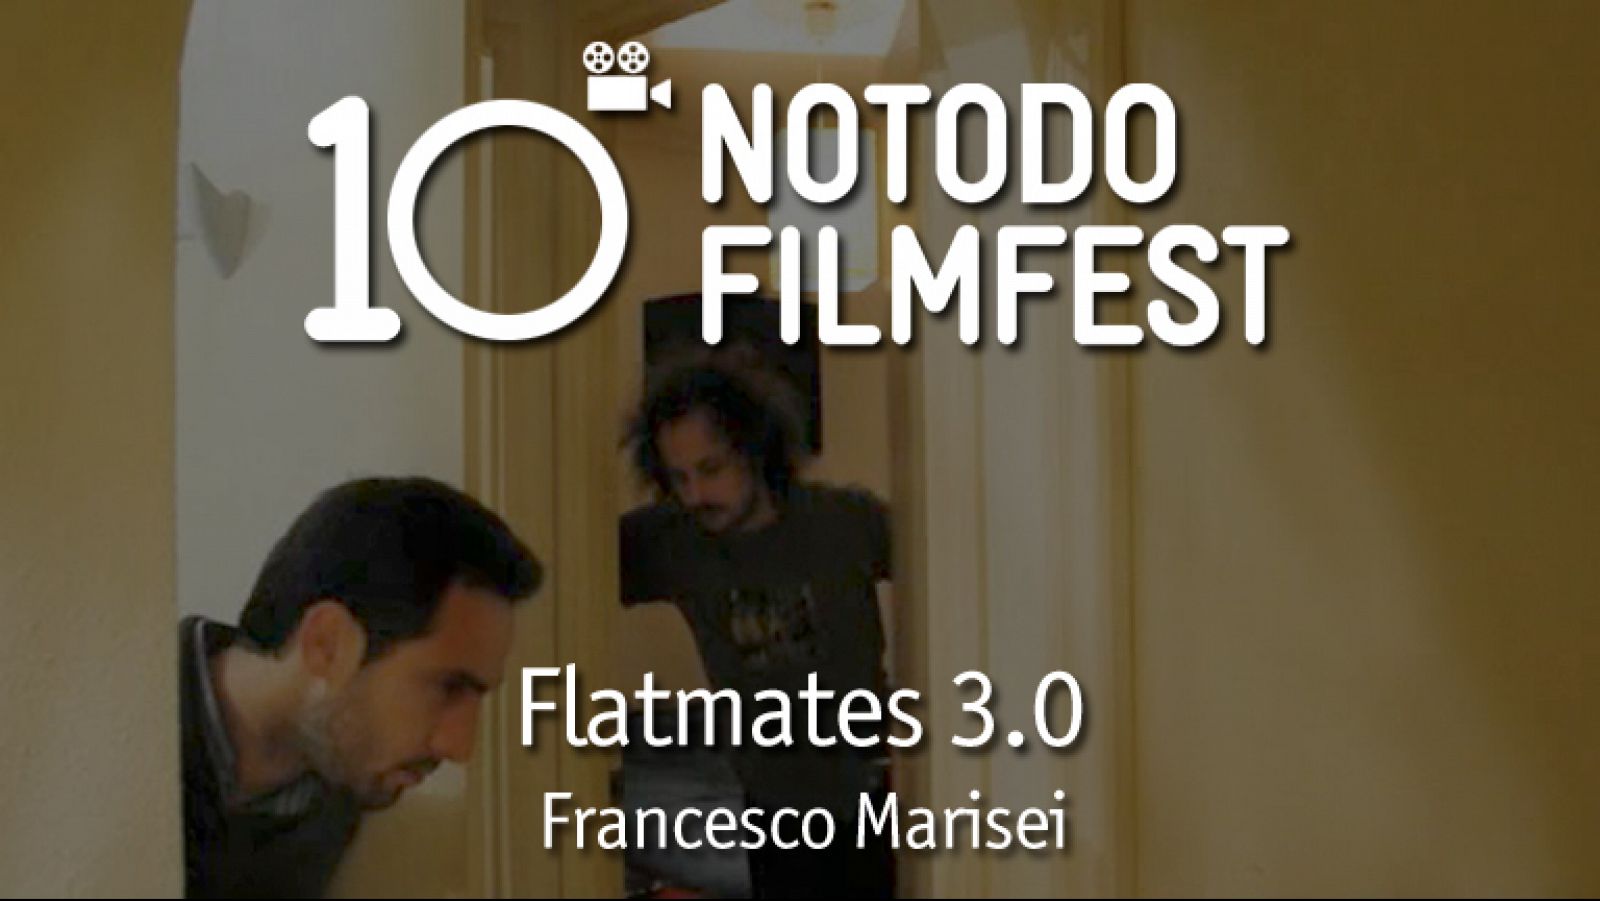 Flatmates 3.0 - Francesco Marisei (2011)